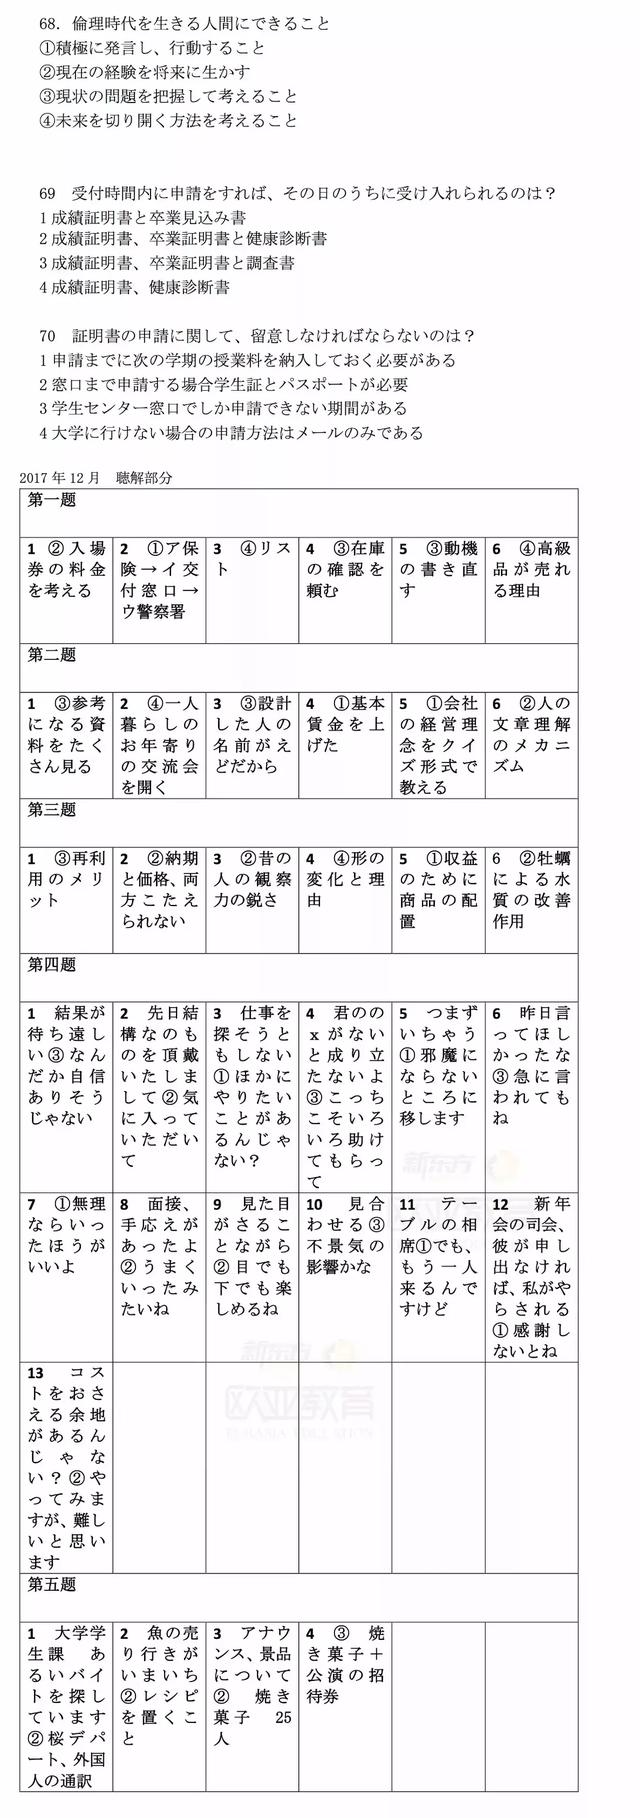 日语能力考试 Jlpt 答案解析回忆版 附17年12月原题